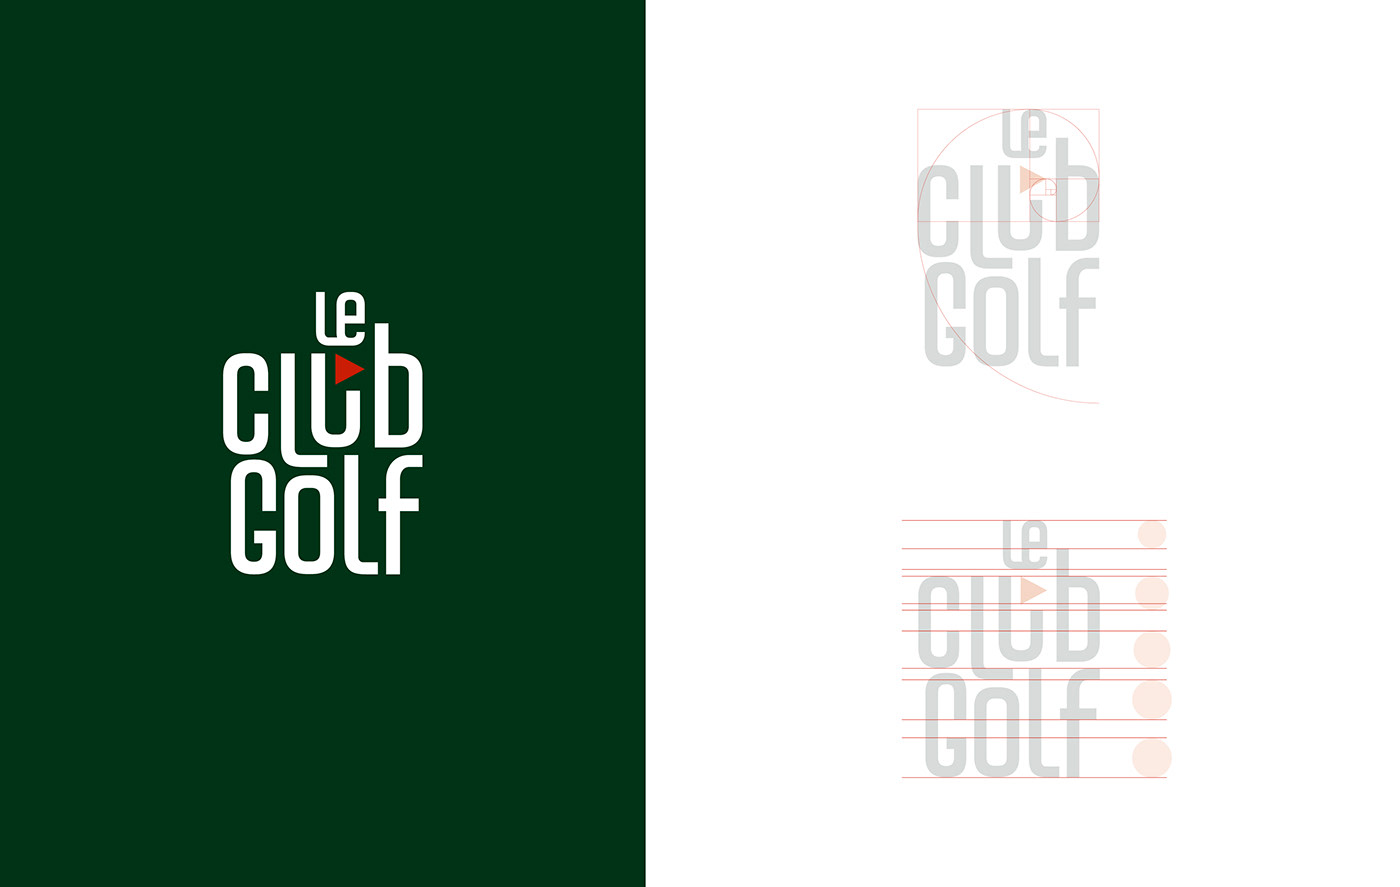 brand charte graphique edition golf graphisme identité visuelle Logotype marque Photographie